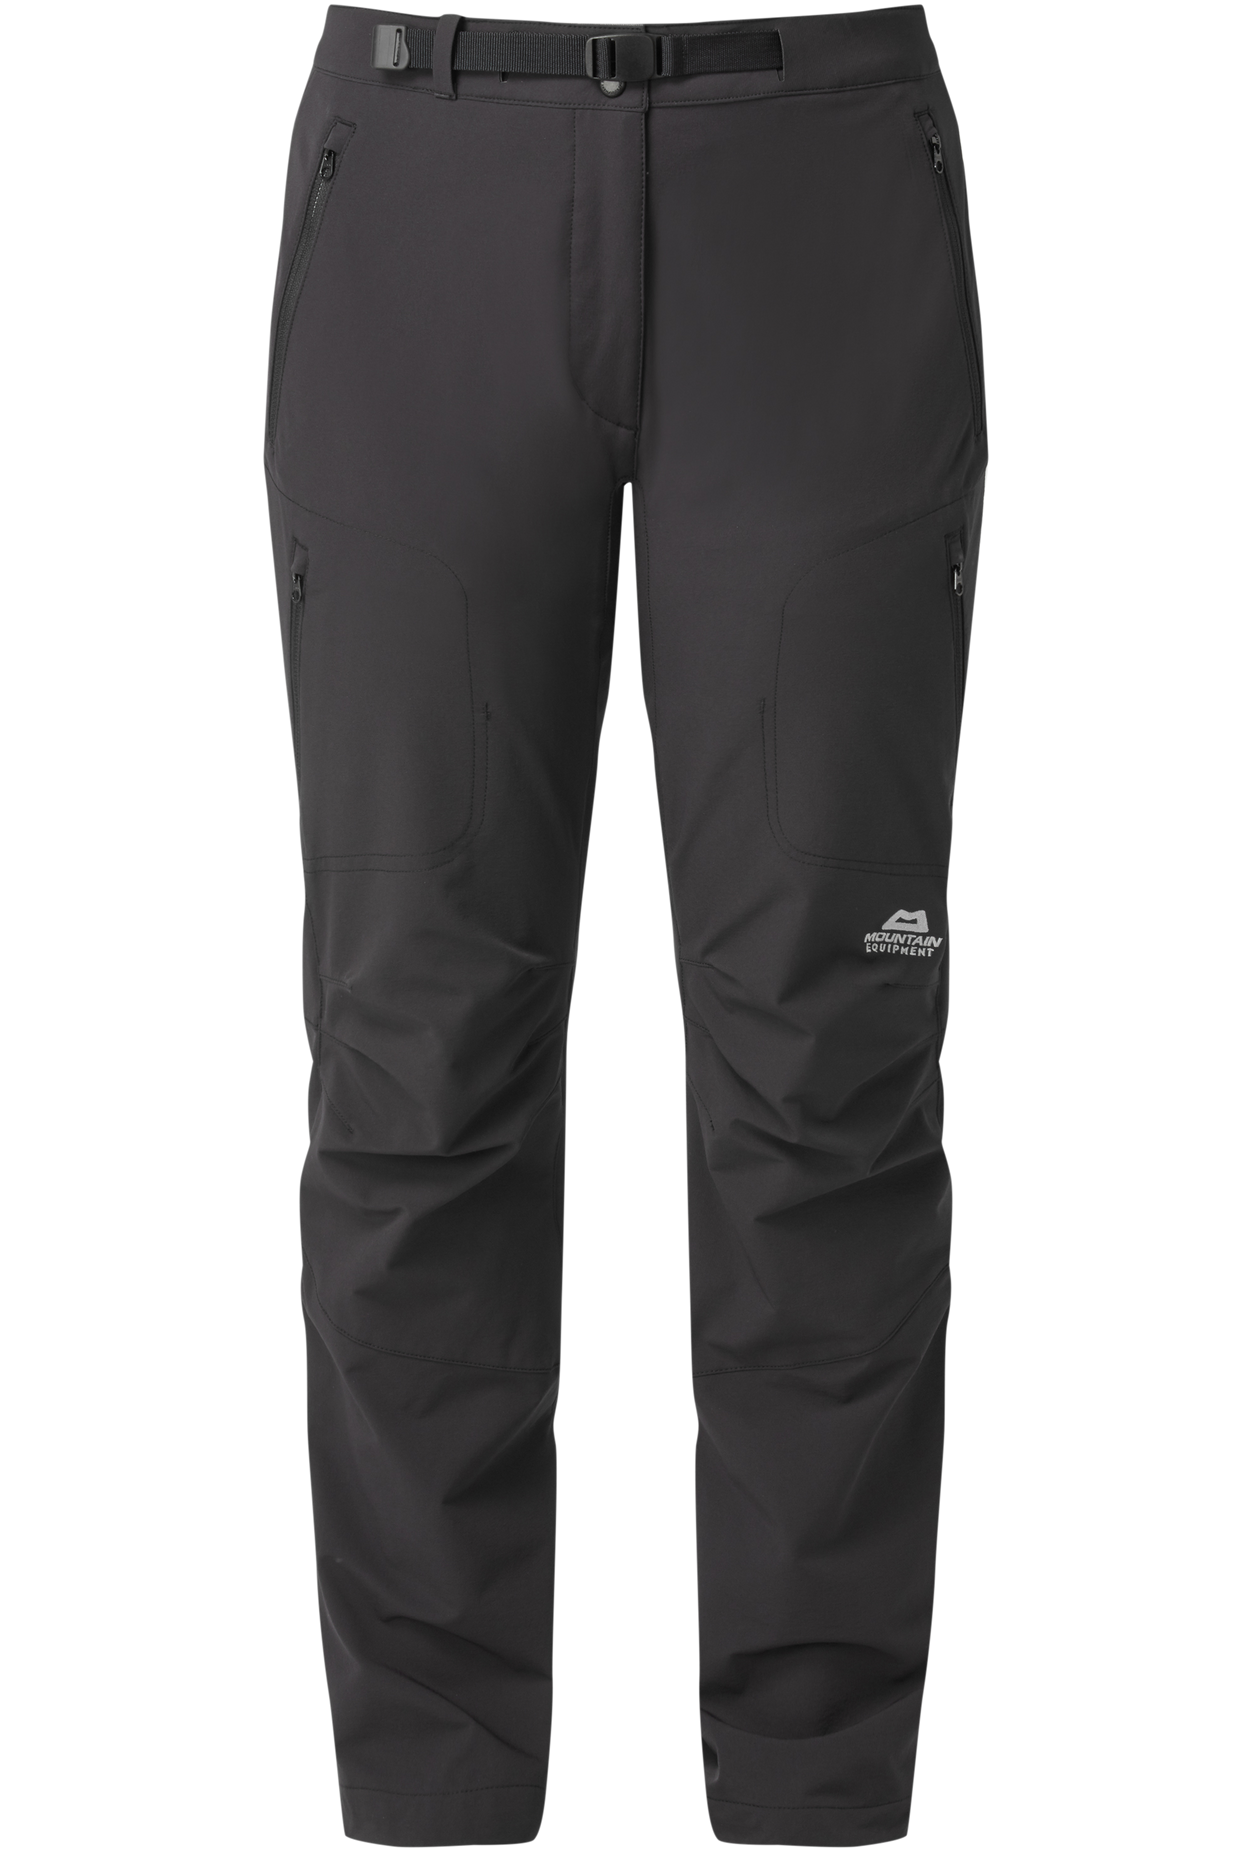 Mountain Equipment dámské softshellové kalhoty Chamois Wmns Pant Barva: black, Velikost: 16/XL